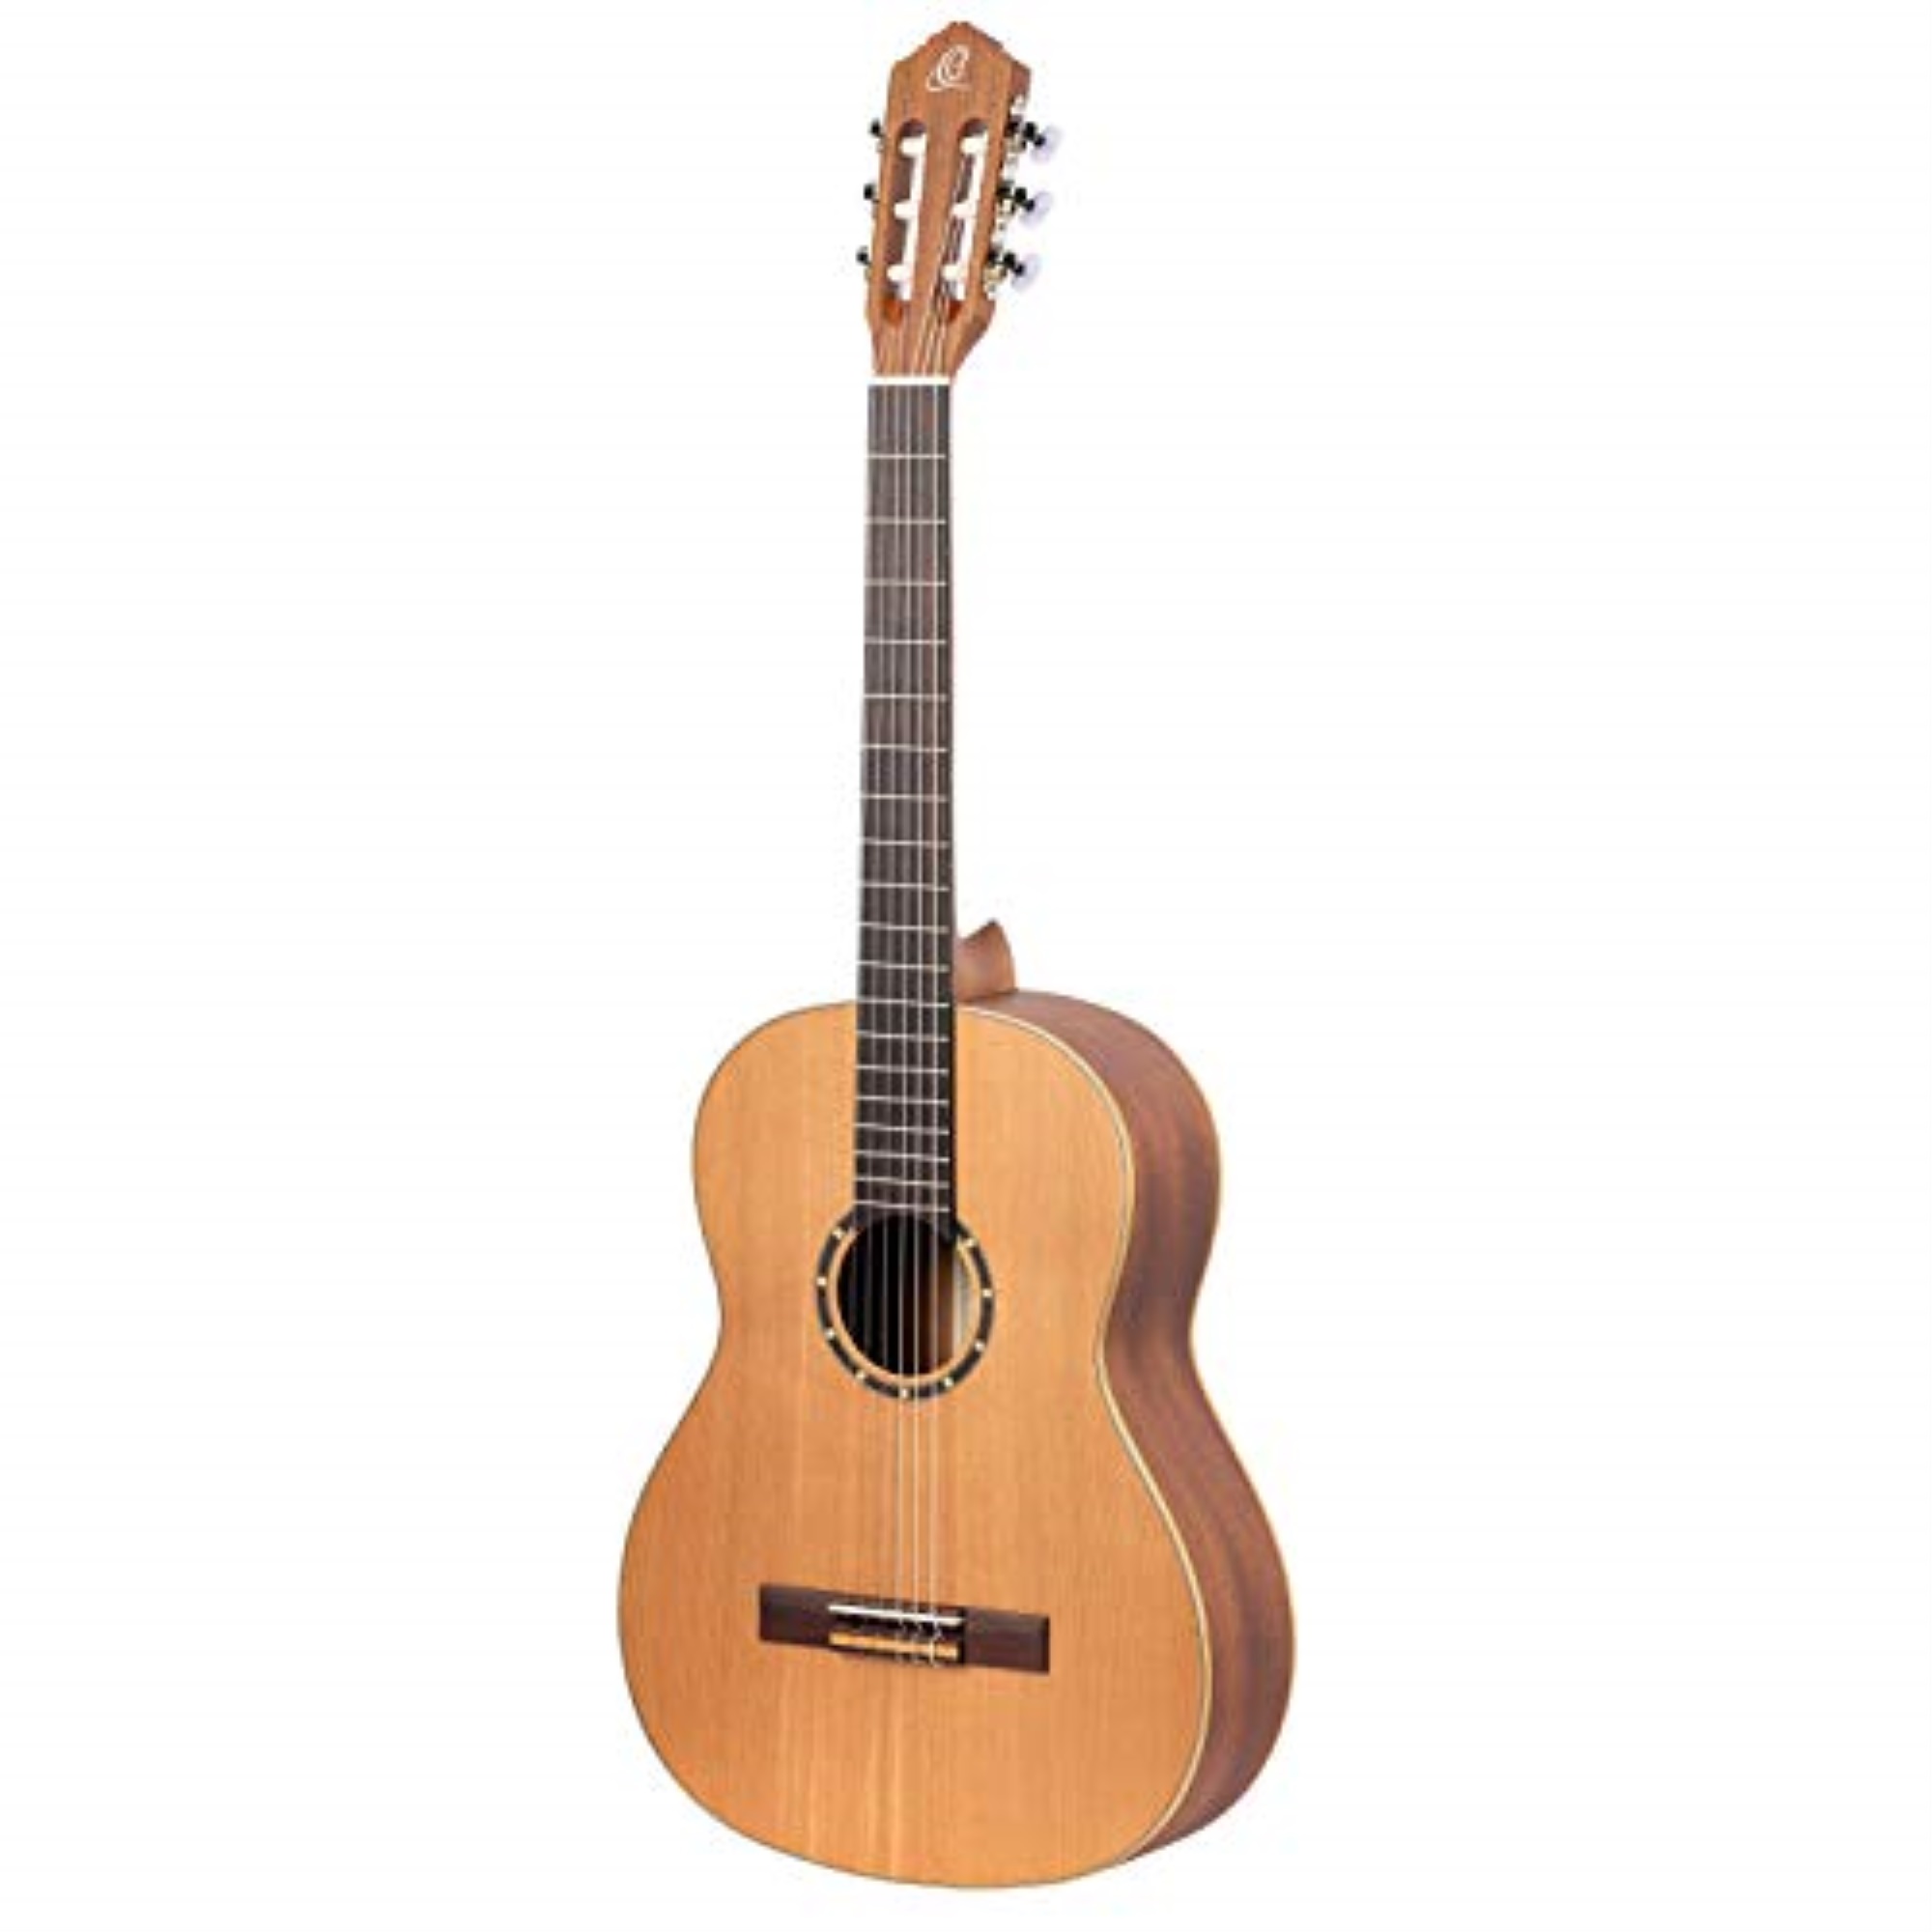 Ortega Guitars Family Series Full Size Slim Neck Left-Handed Nylon String Classical Guitar with Bag